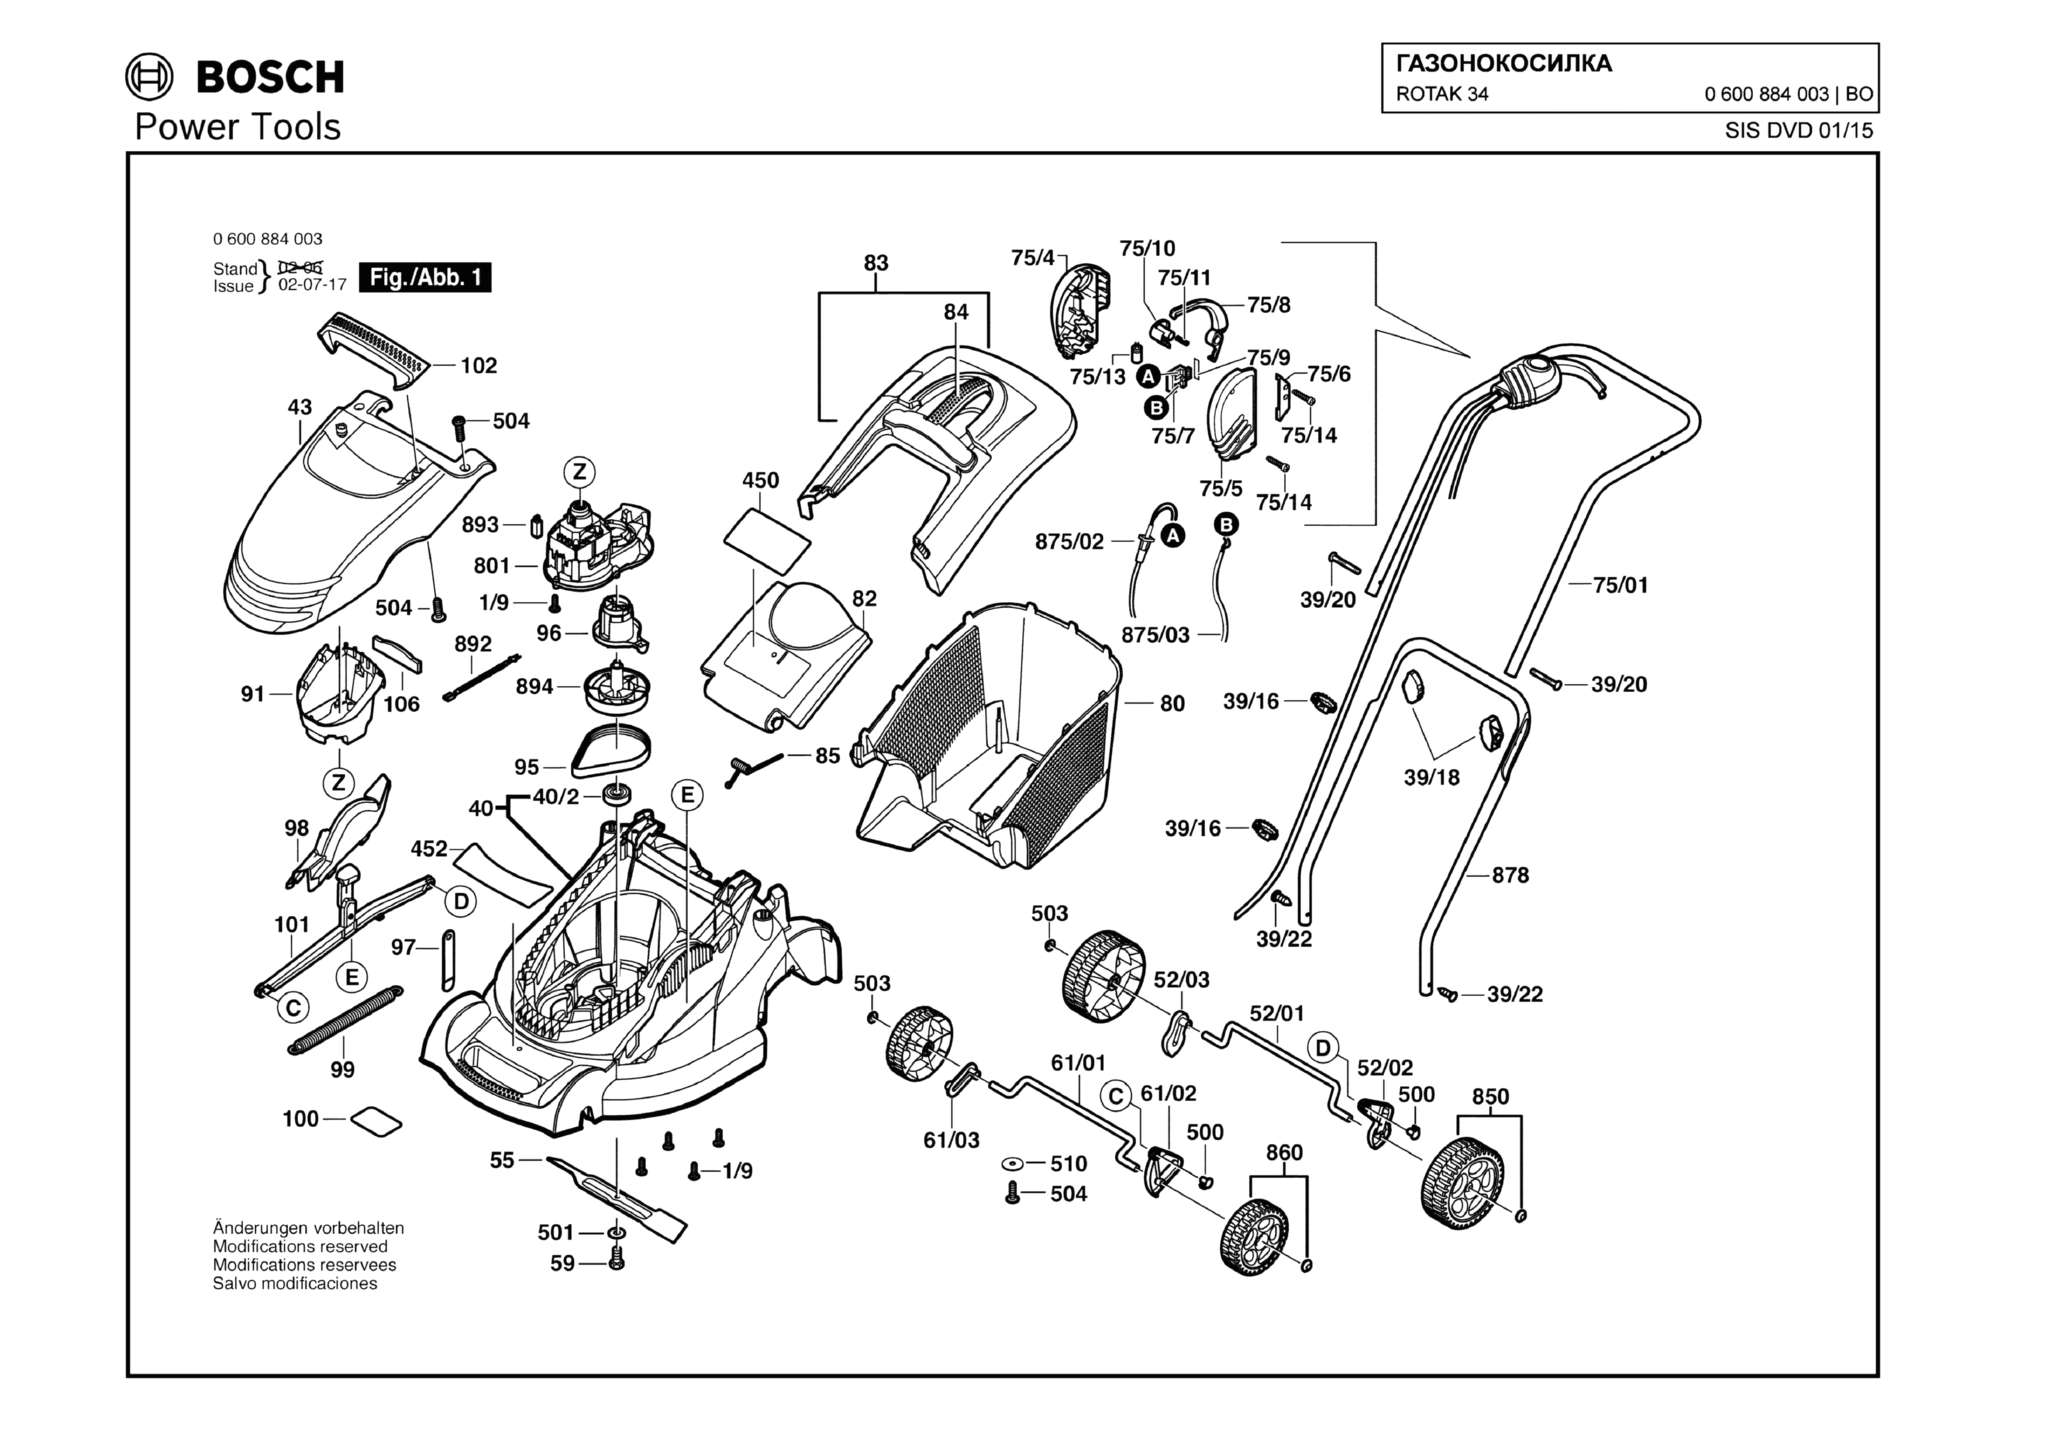 Запчасти, схема и деталировка Bosch ROTAK 34 (ТИП 0600884003)